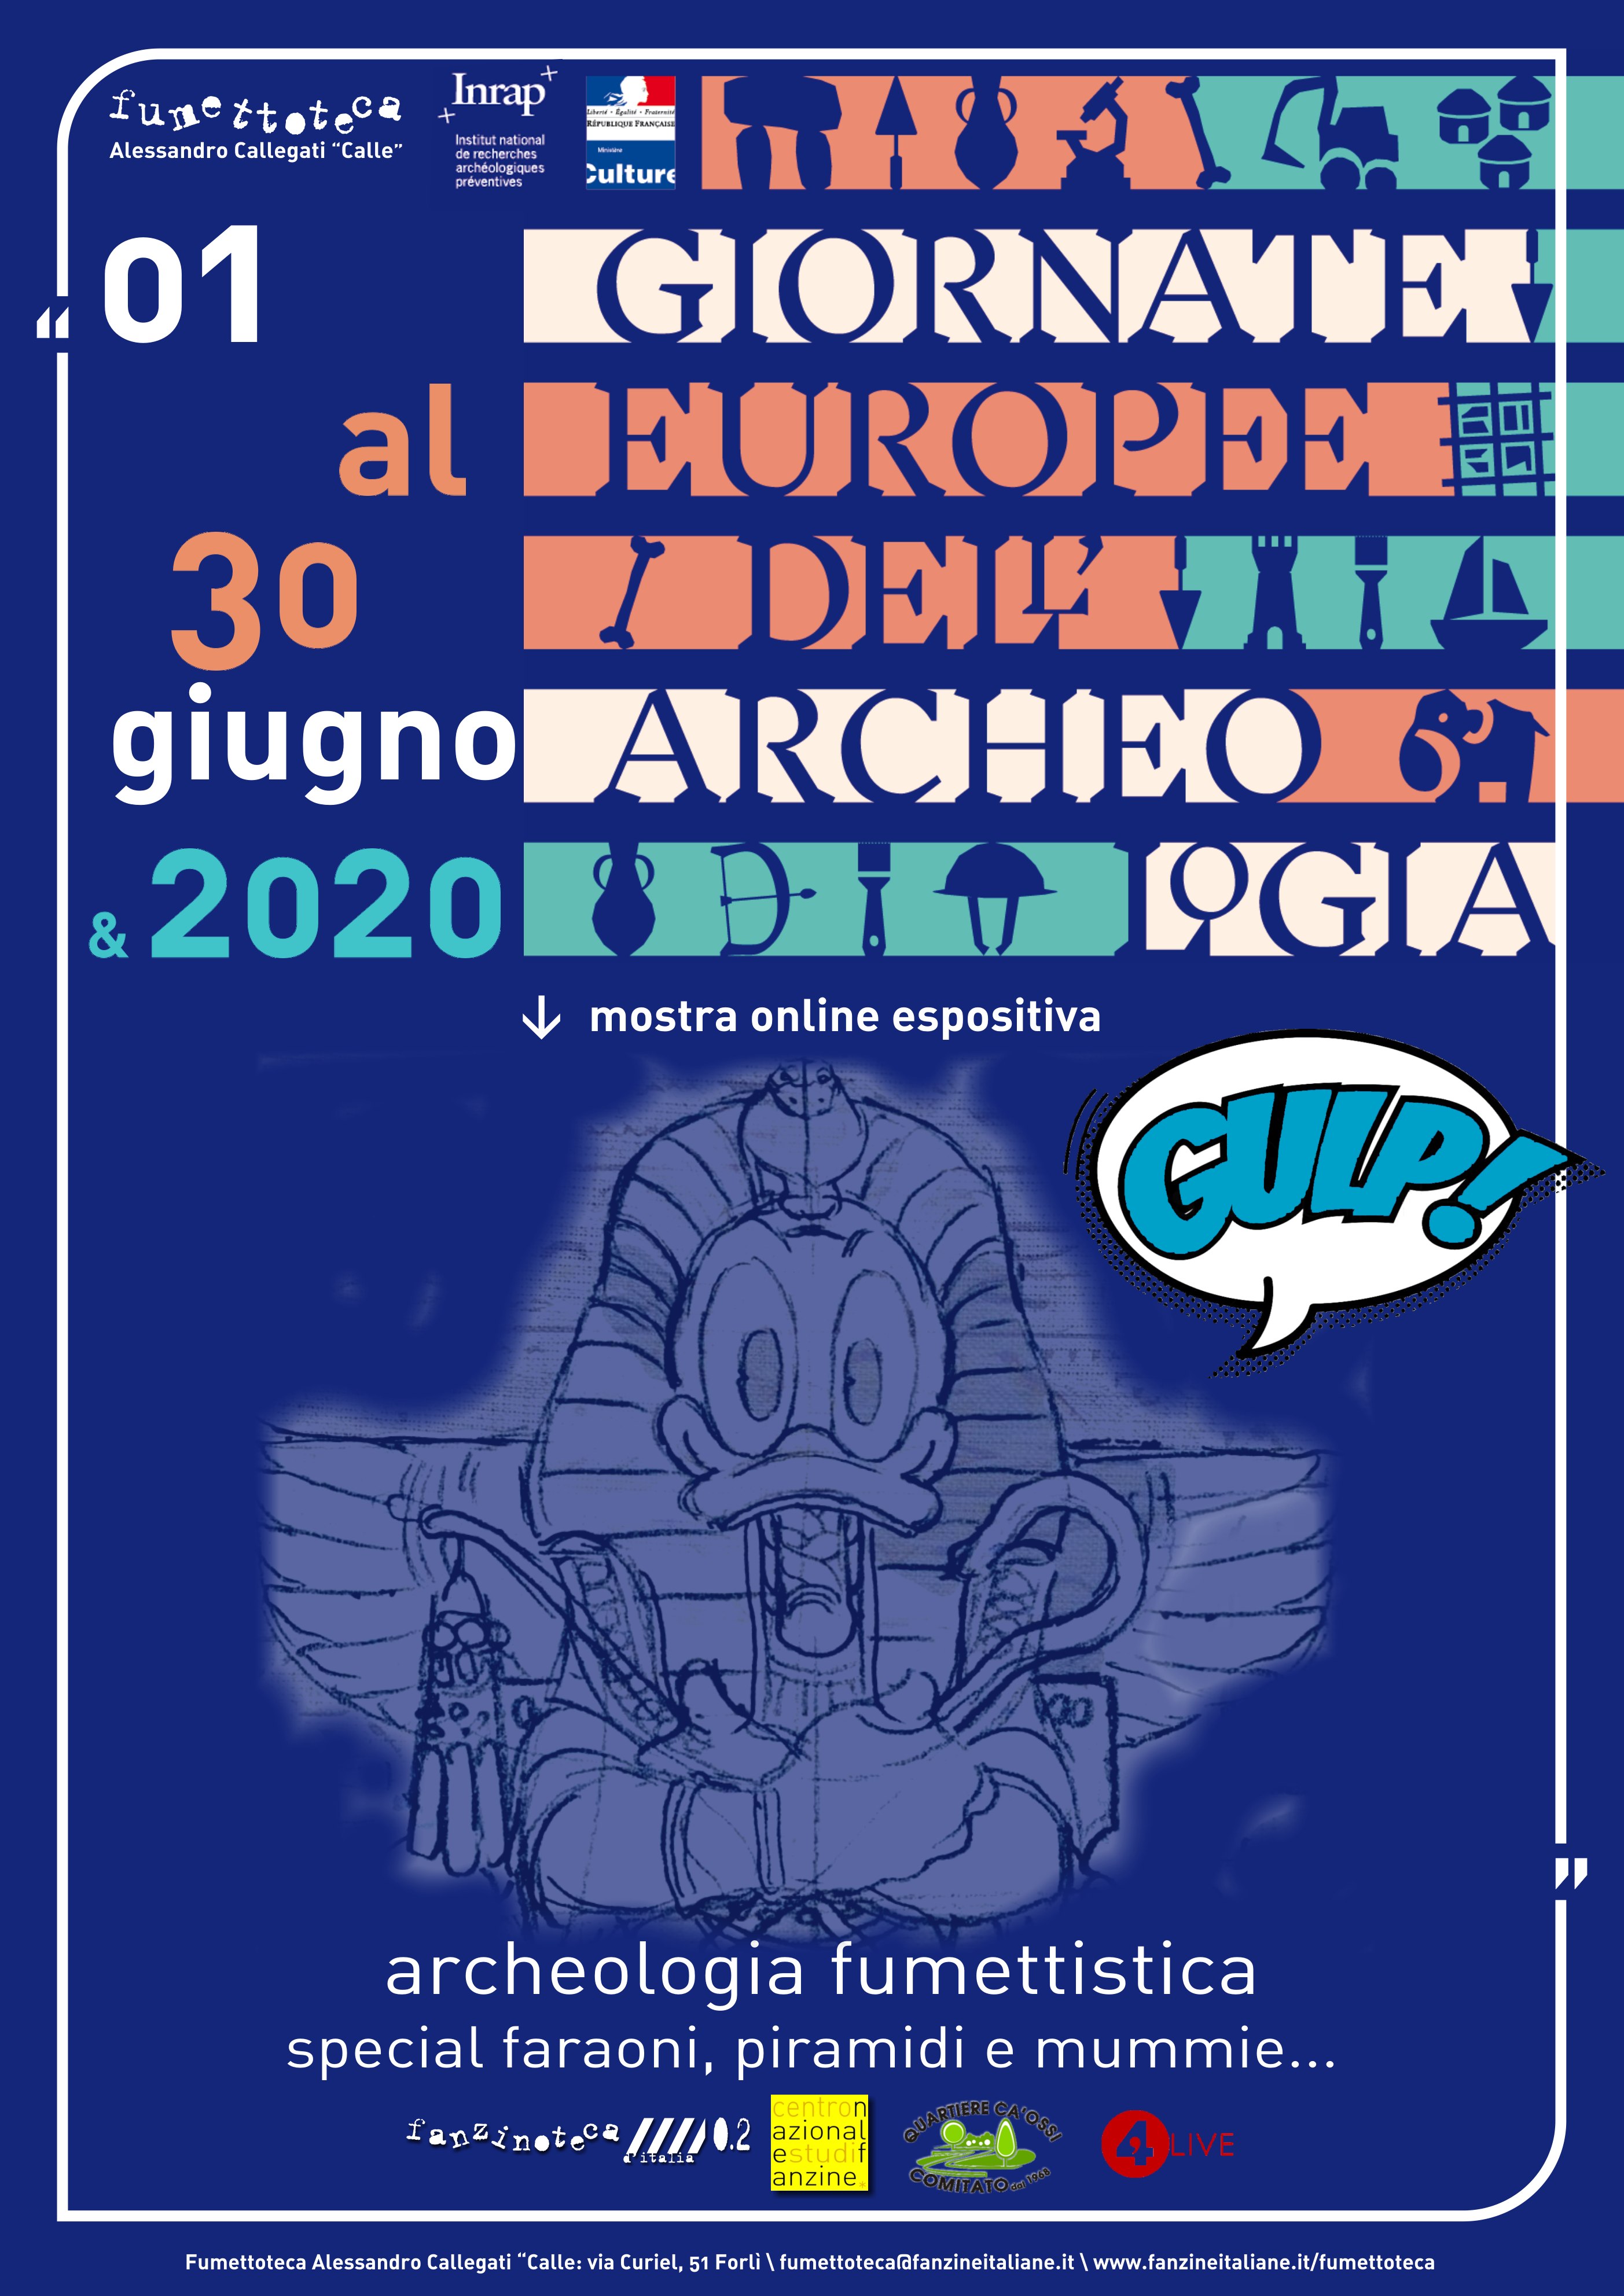 Fumettoteca Alessandro Callegati "Calle" - "Giornate Europee dell'Archeologia" Fumetto & Archeologia Locandina - 01/30 giugno 2020